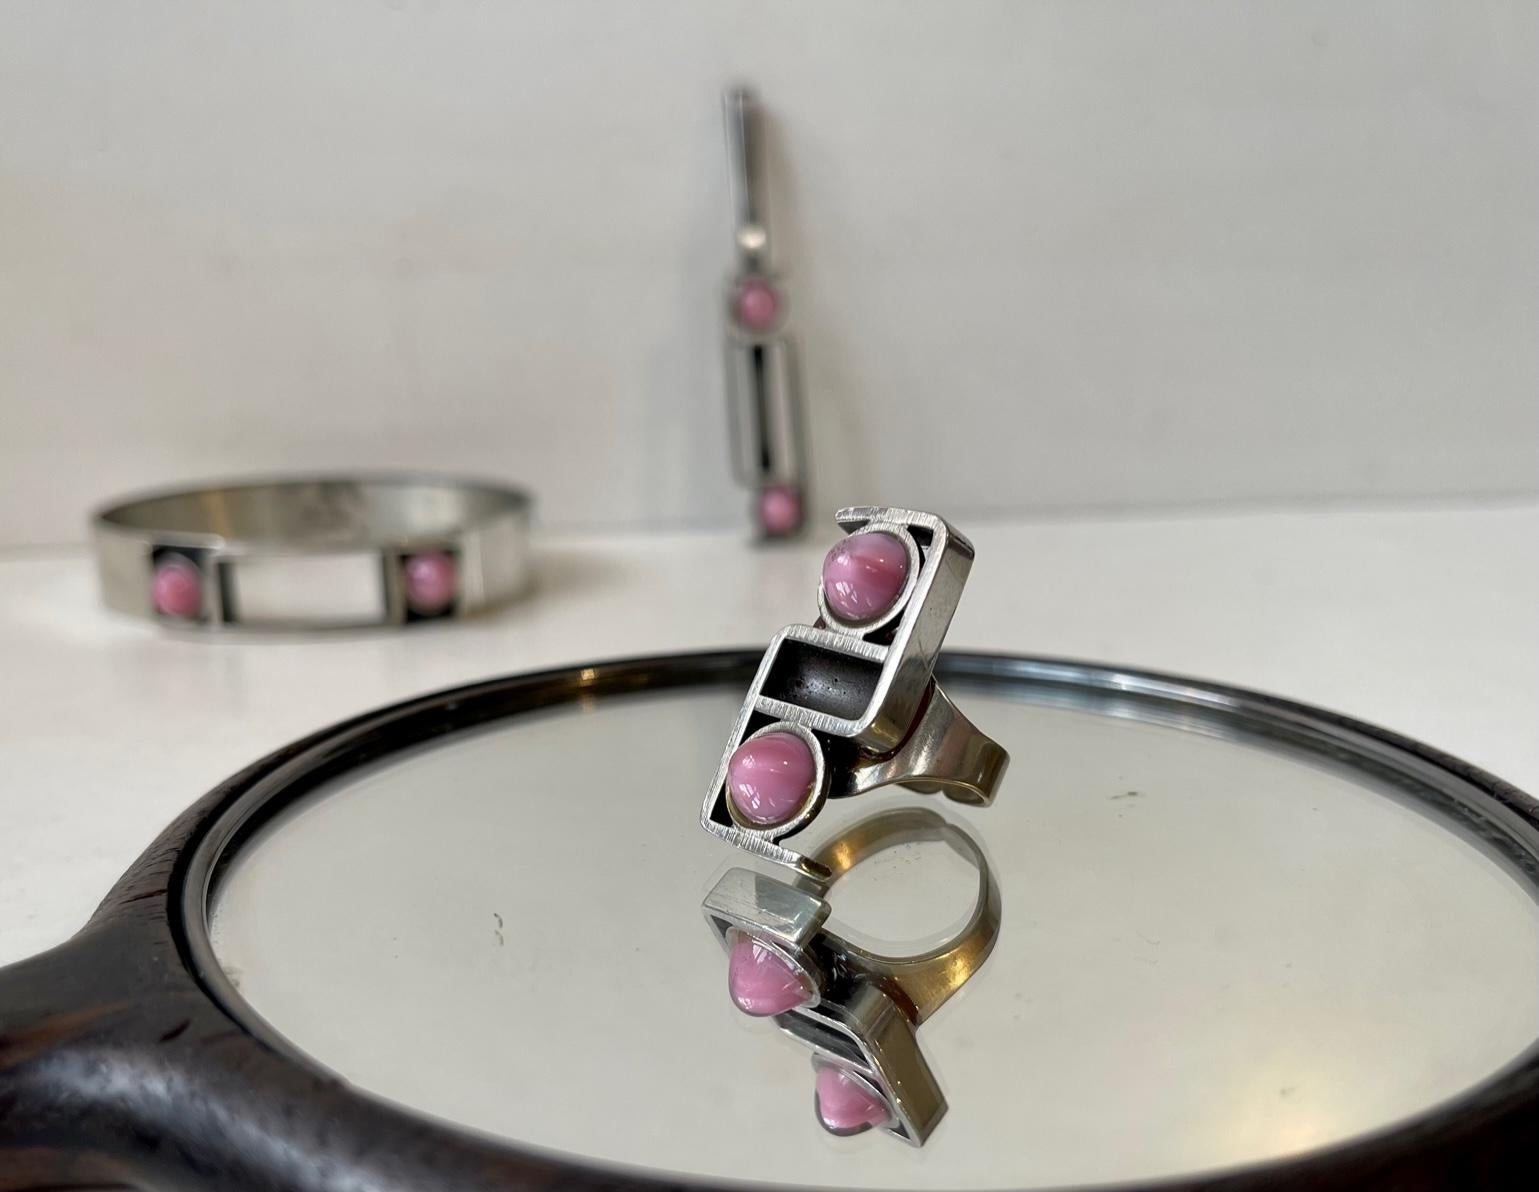 Kunstschmuck-Set bestehend aus einem mit rosa Edelsteinen besetzten Armreif, Ring und Anhänger aus Zinn. Wir vermuten, dass es sich bei den rosa Steinen entweder um Rosenquarz oder Mondsteine handelt. Dieses Set wurde in den 1970er Jahren von